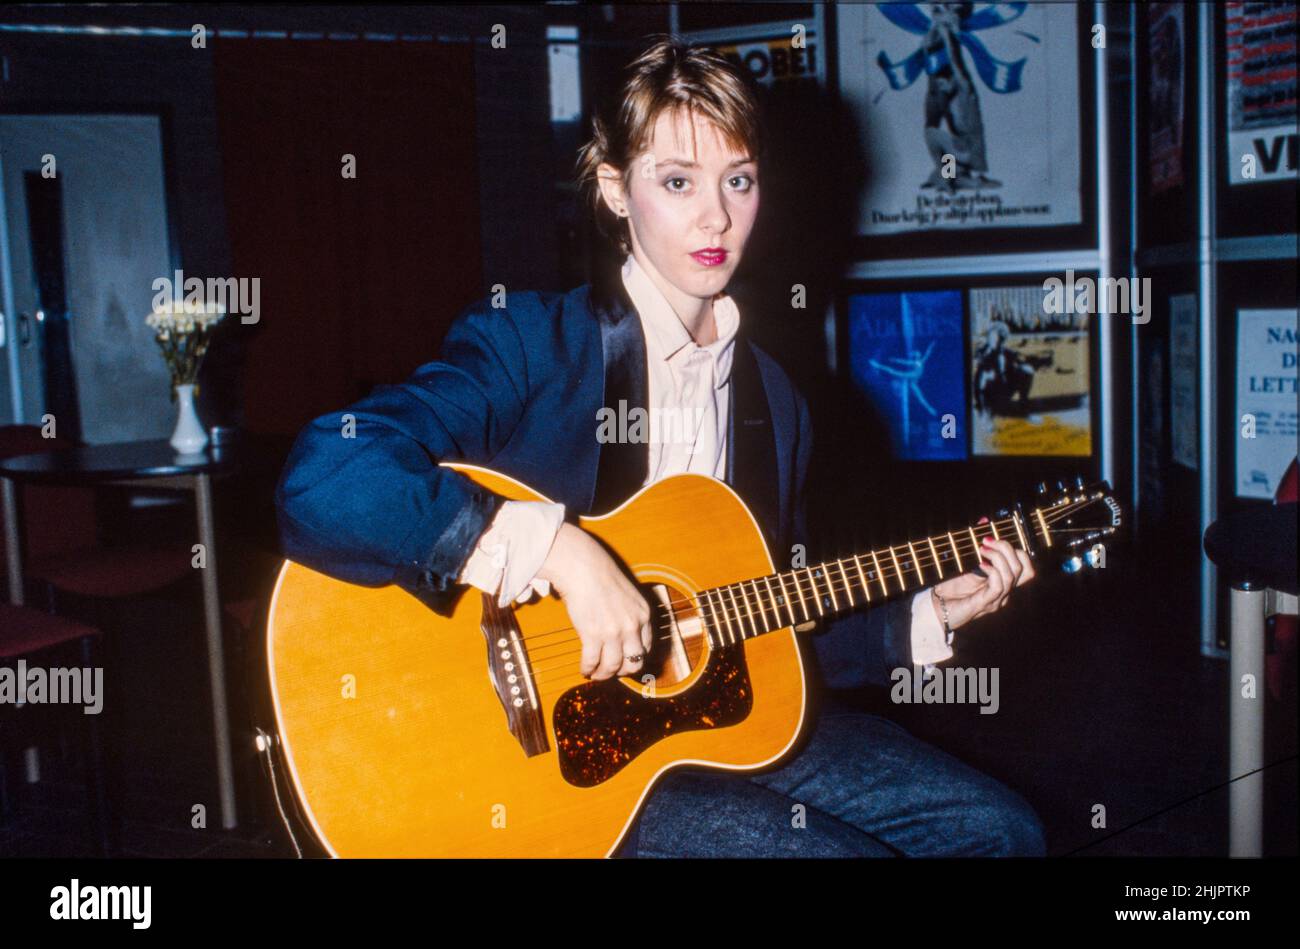 HILVERSUM, PAÍSES BAJOS - 06 DE NOVIEMBRE de 1985: Cantante y compositora estadounidense Suzanne Vega. Foto de stock